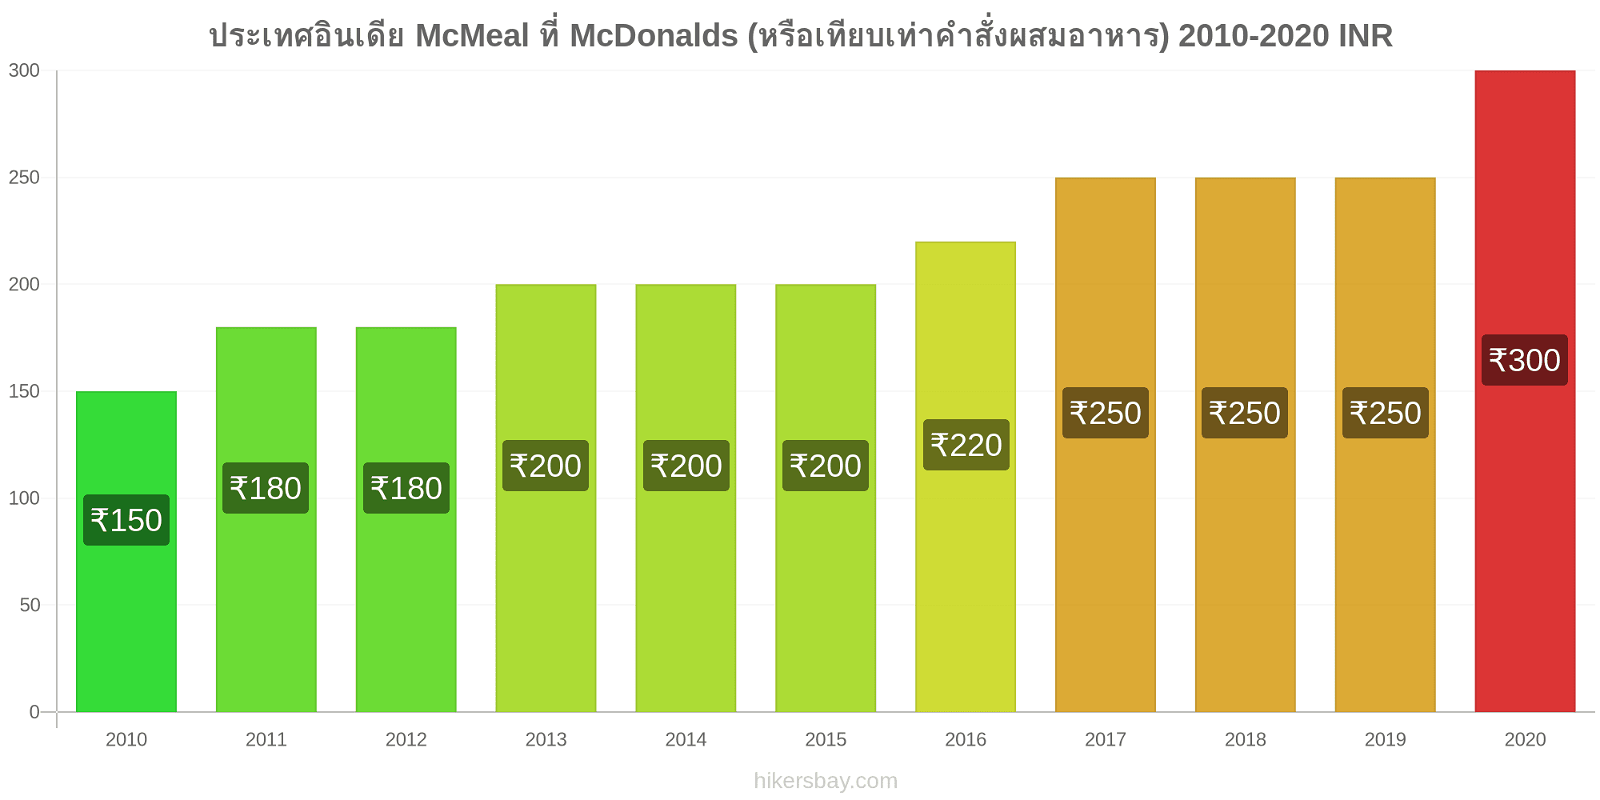 ประเทศอินเดีย การเปลี่ยนแปลงราคา McMeal ที่ McDonalds (หรือเทียบเท่าคำสั่งผสมอาหาร) hikersbay.com